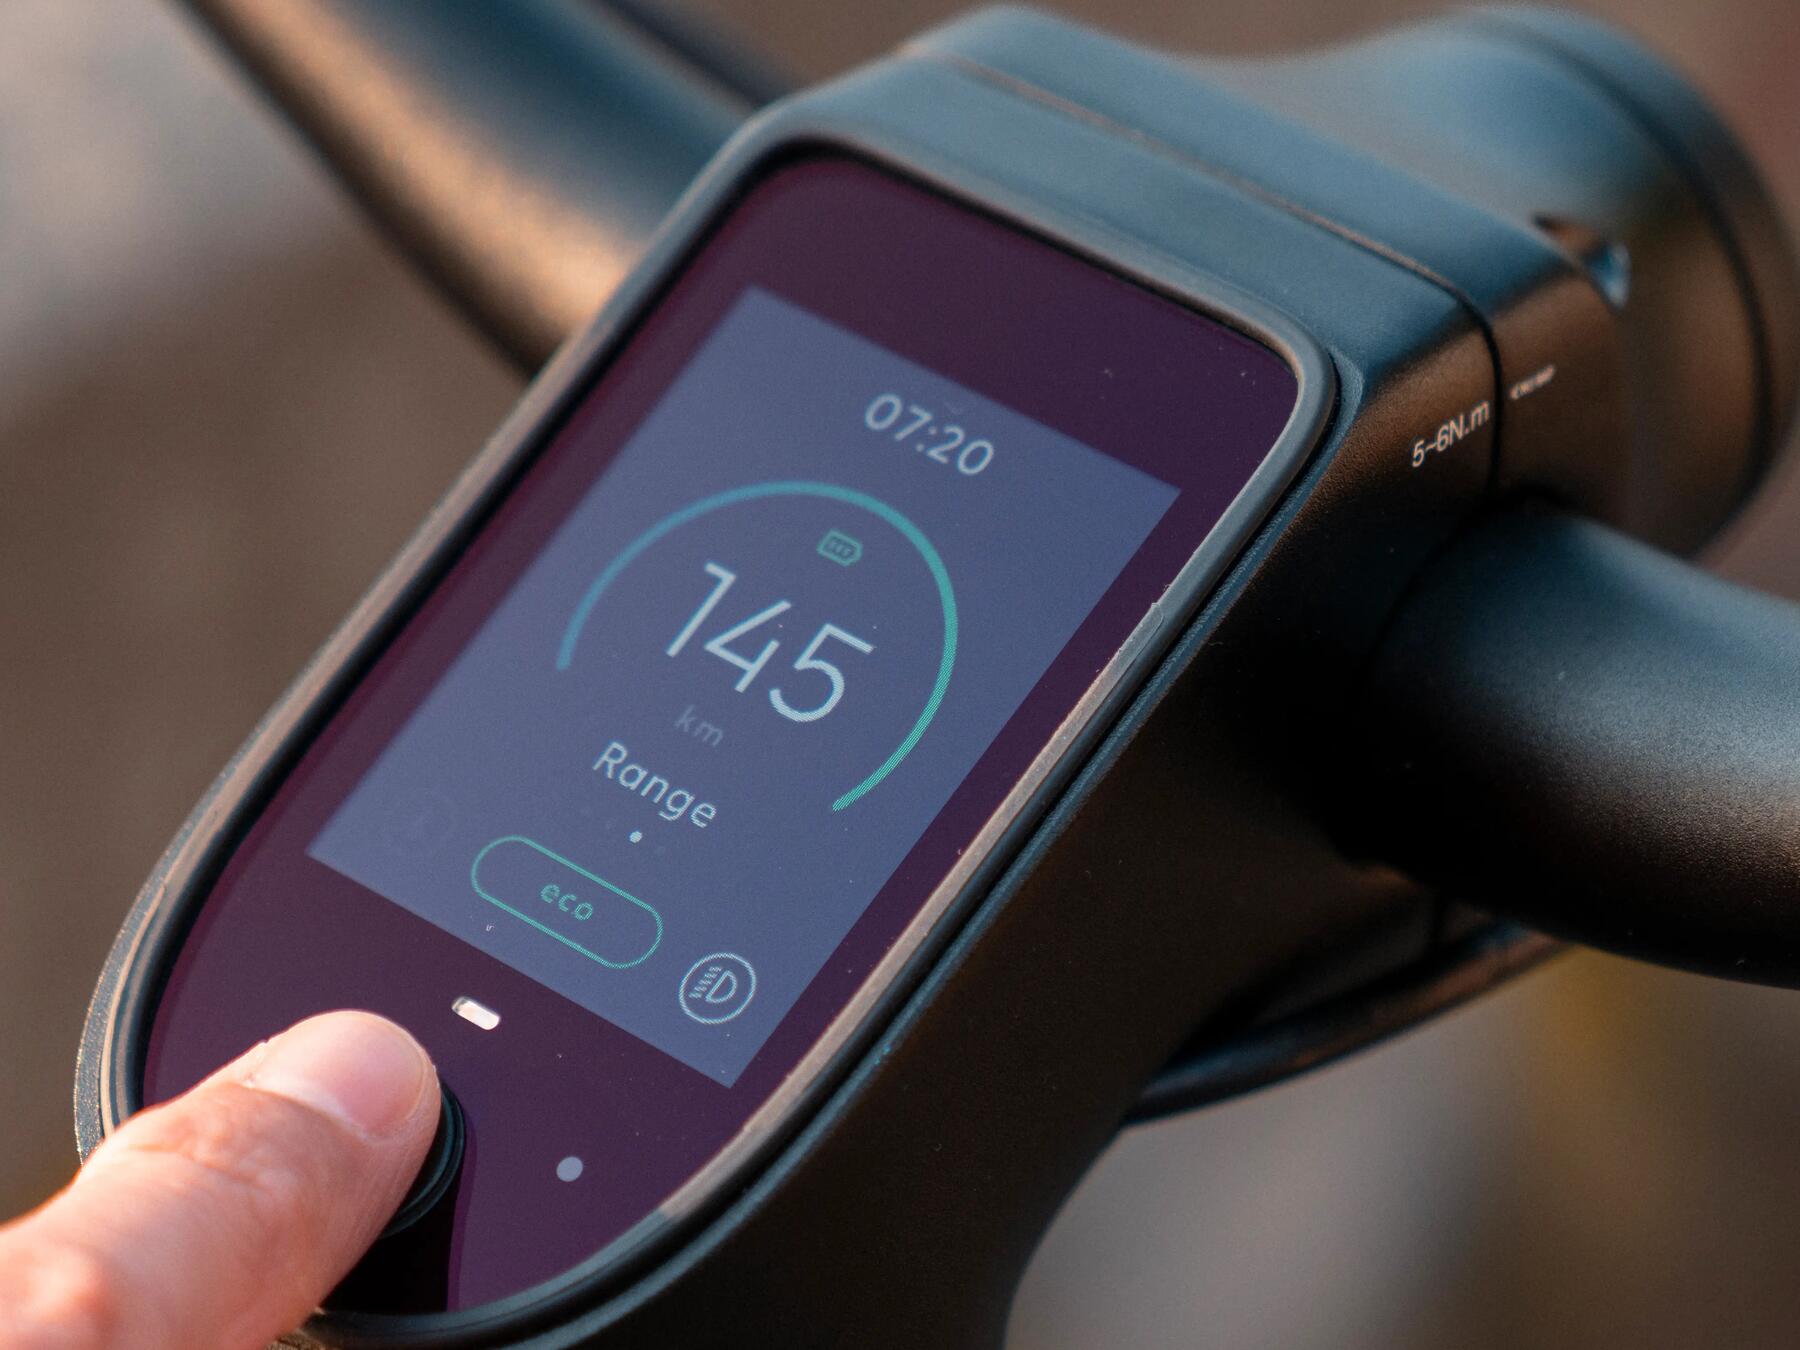 Batterie vélo électrique : comment optimiser sa durée de vie au maximum ?